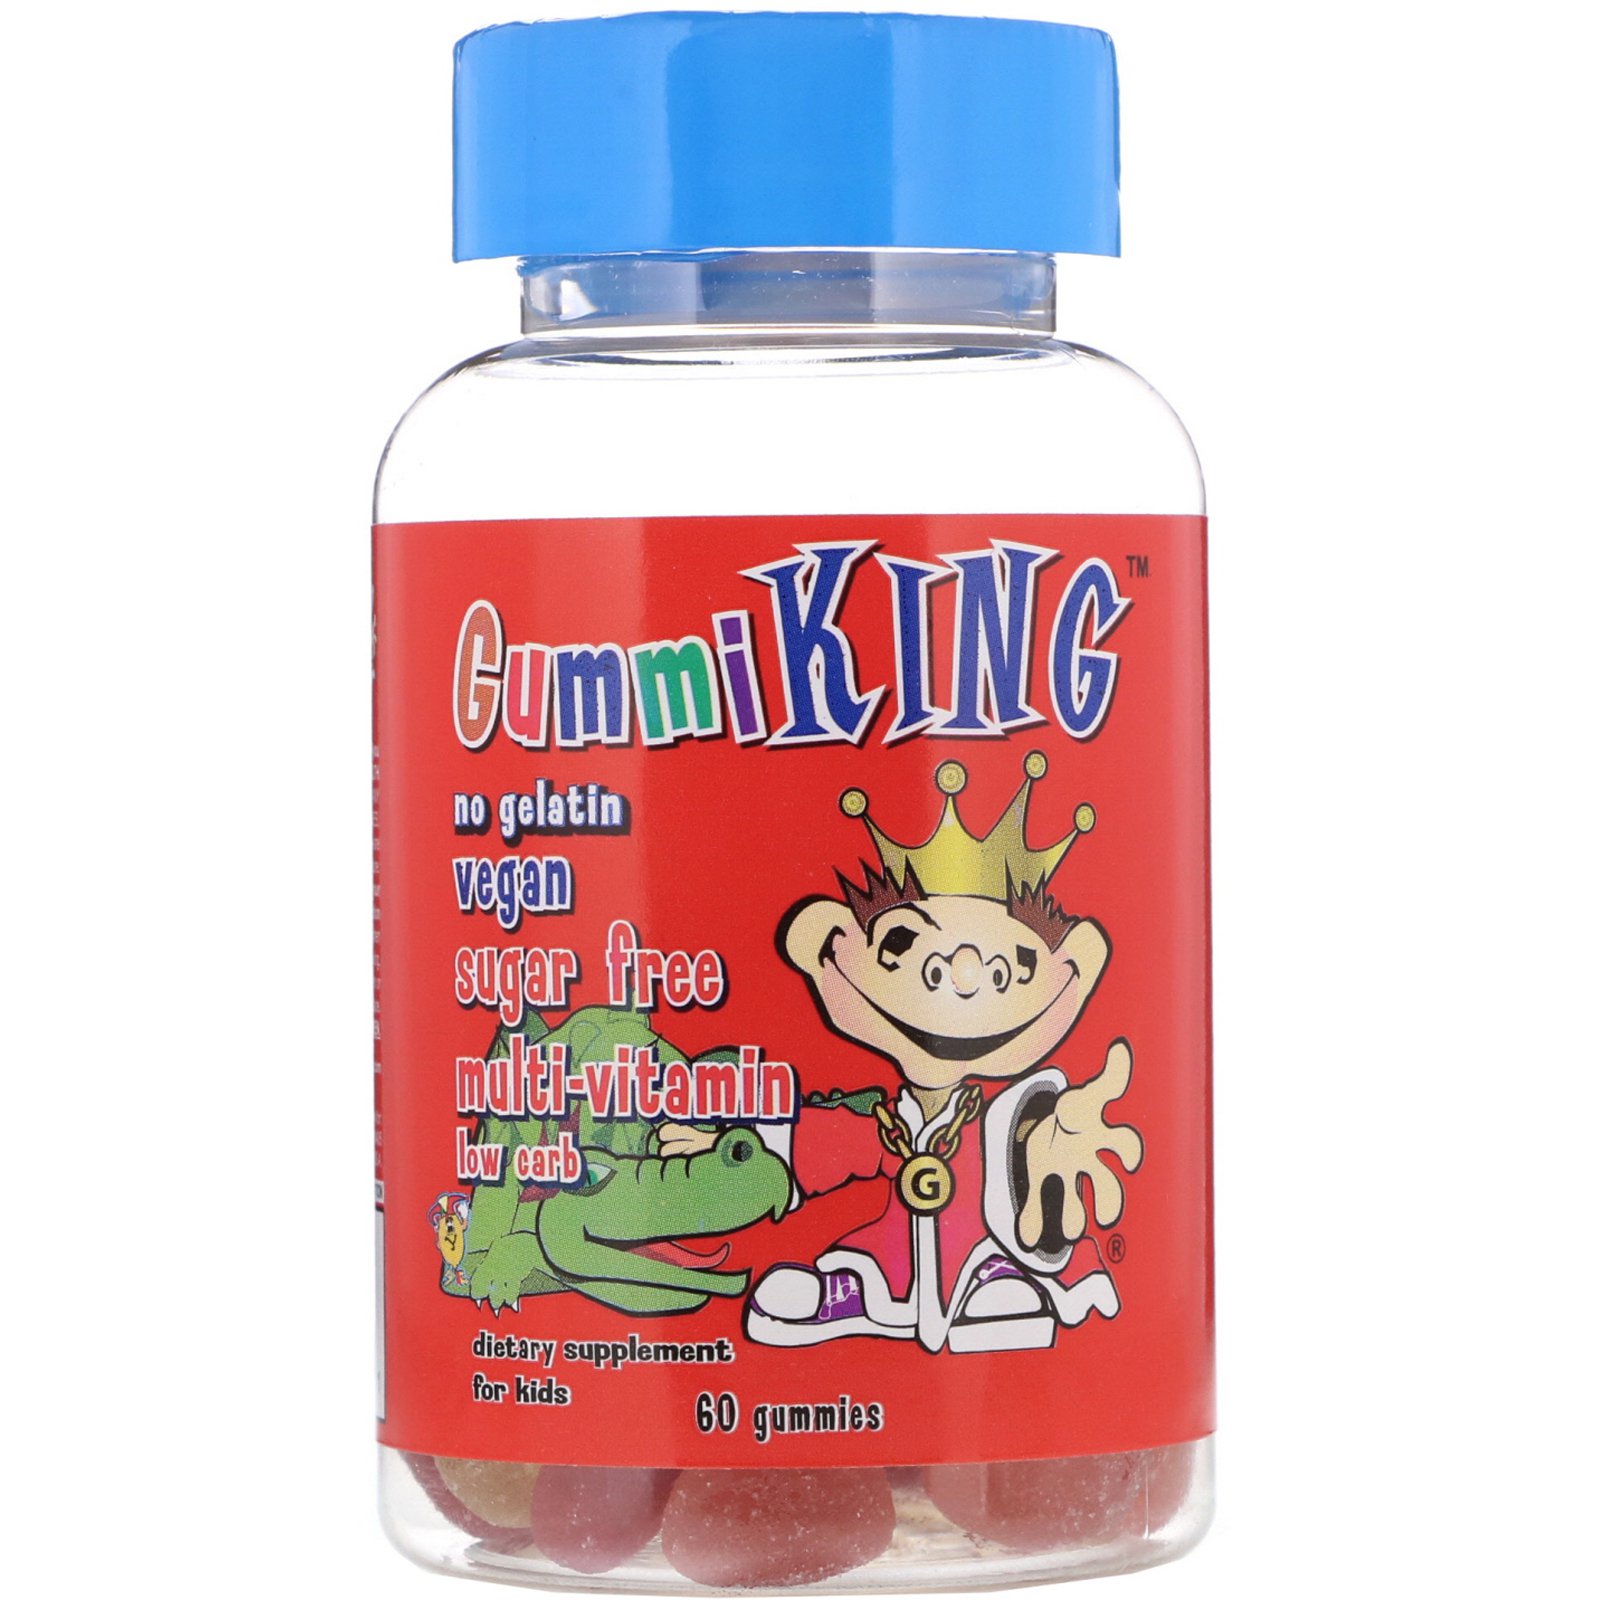 Жевательные мультивитамины для детей. Gummi King витамины для детей. Гамми Кинг витамины для детей. Мультифитамины Gummy King мультивитамины. Gummy King для детей.